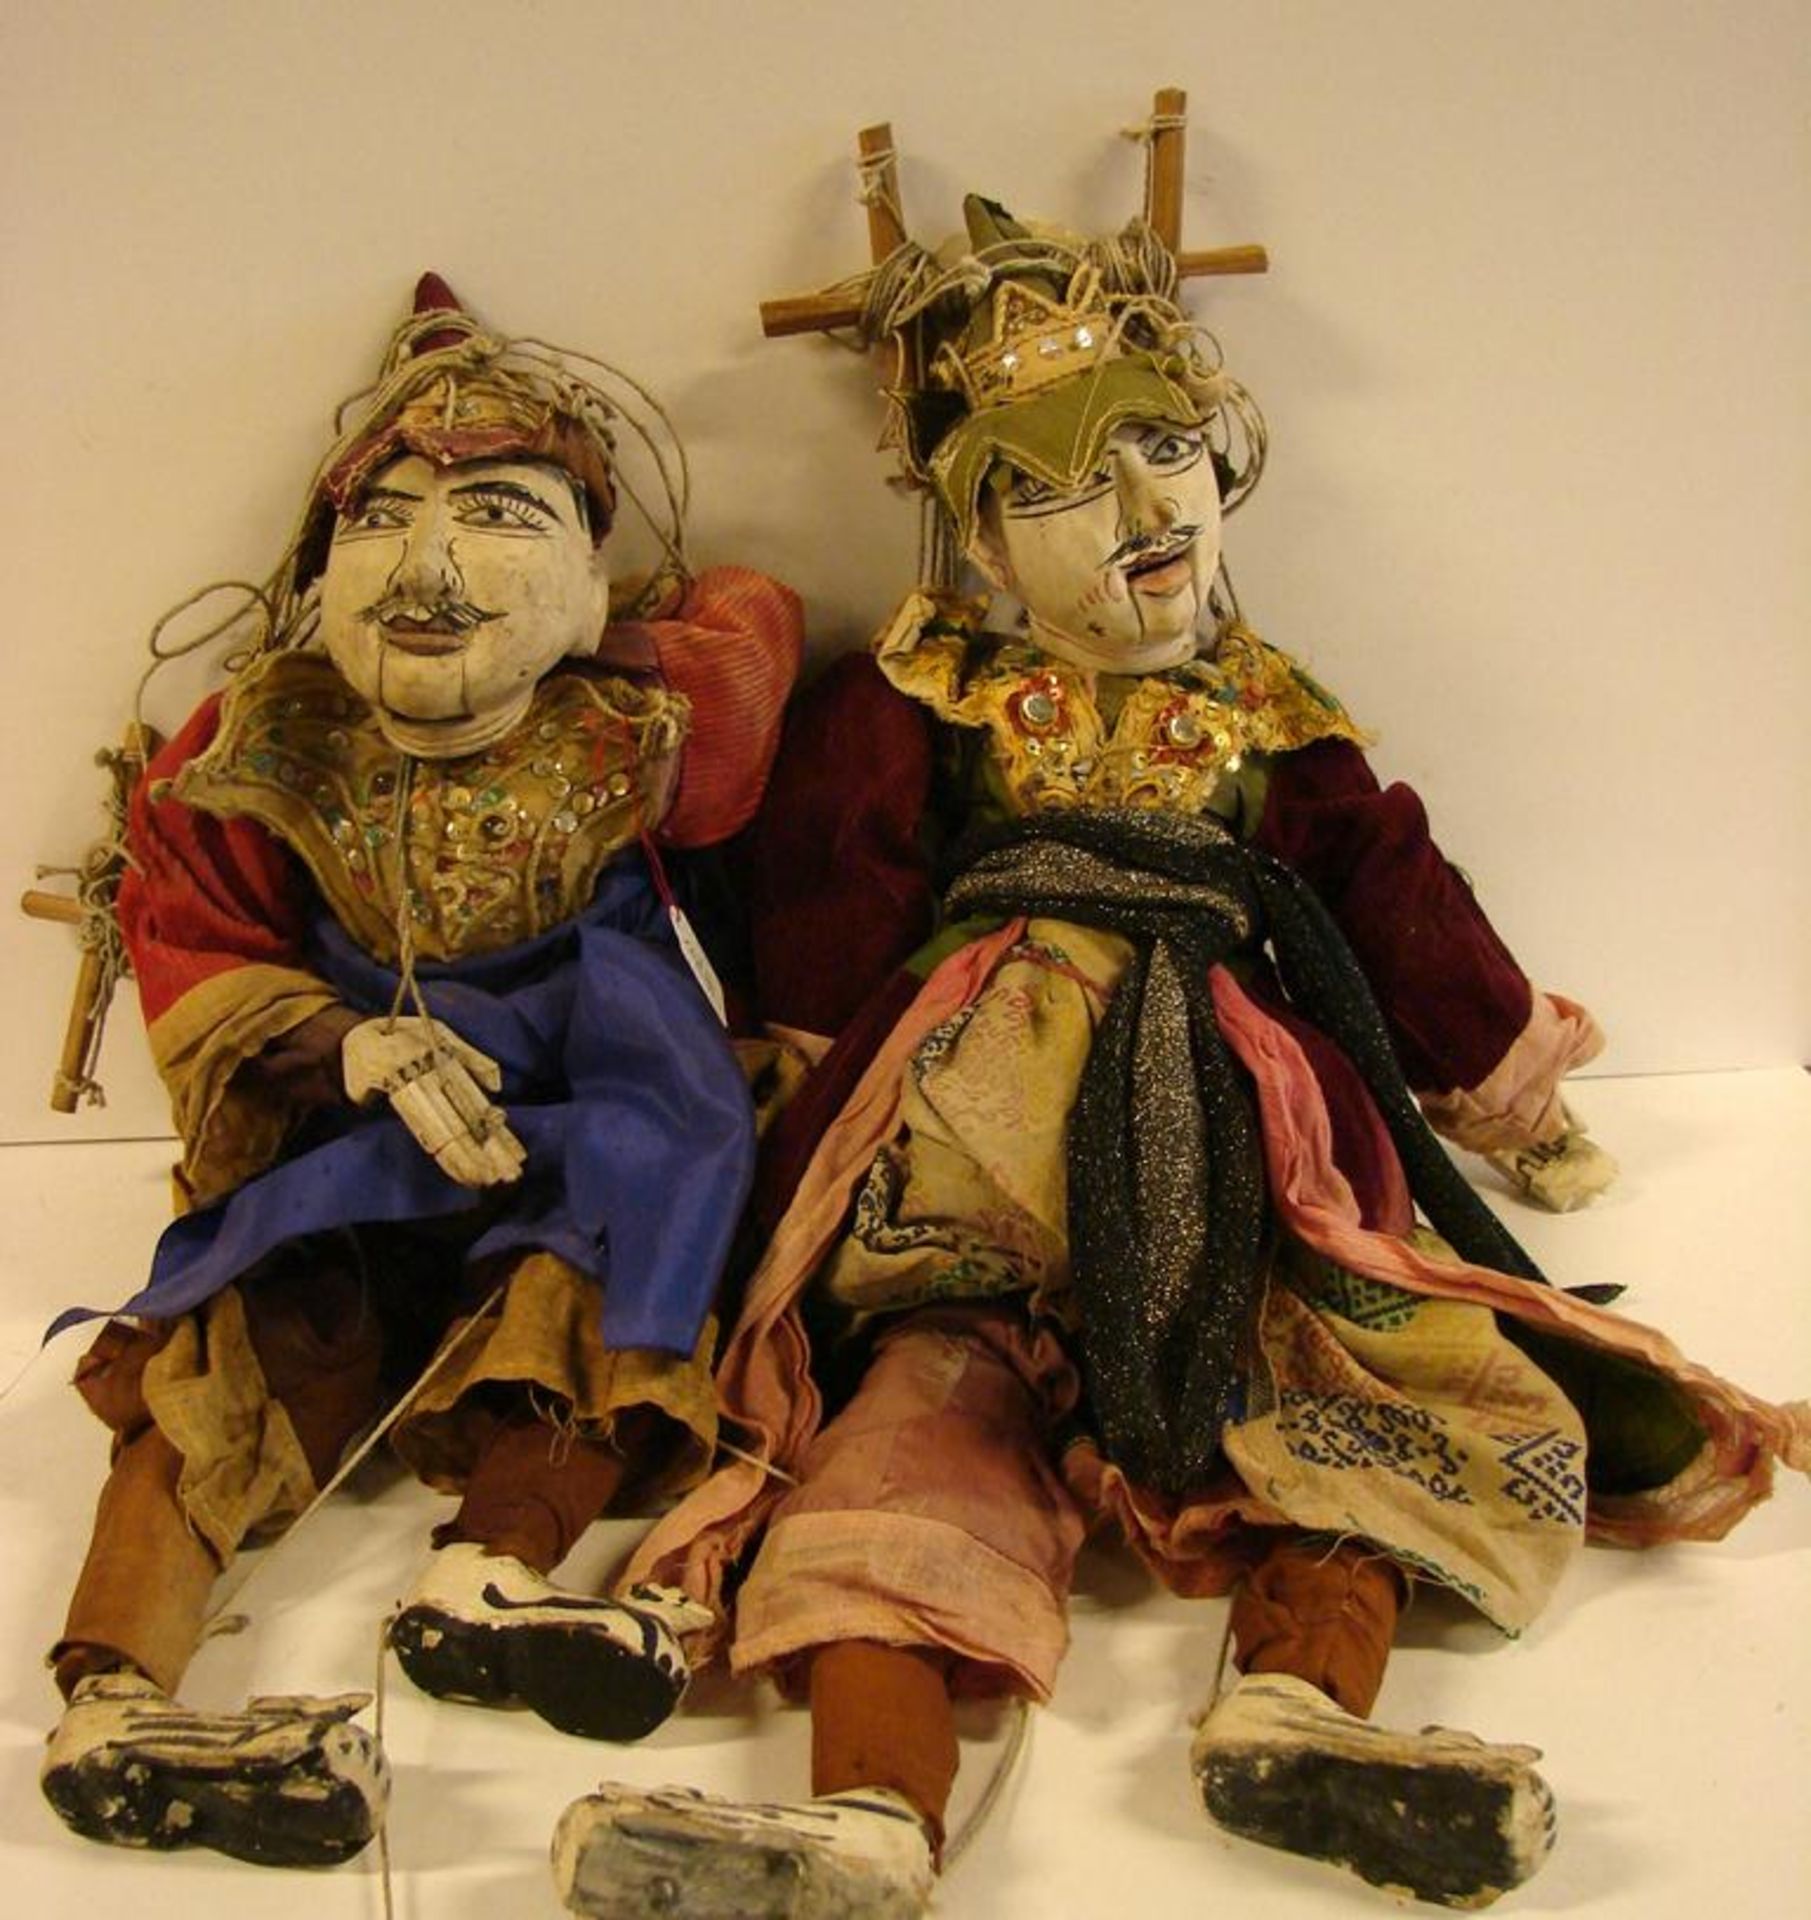 2 Holzpuppen, Marionetten mit beweglichen Fingern, Armen, Beinen, Kopf, Asien,original